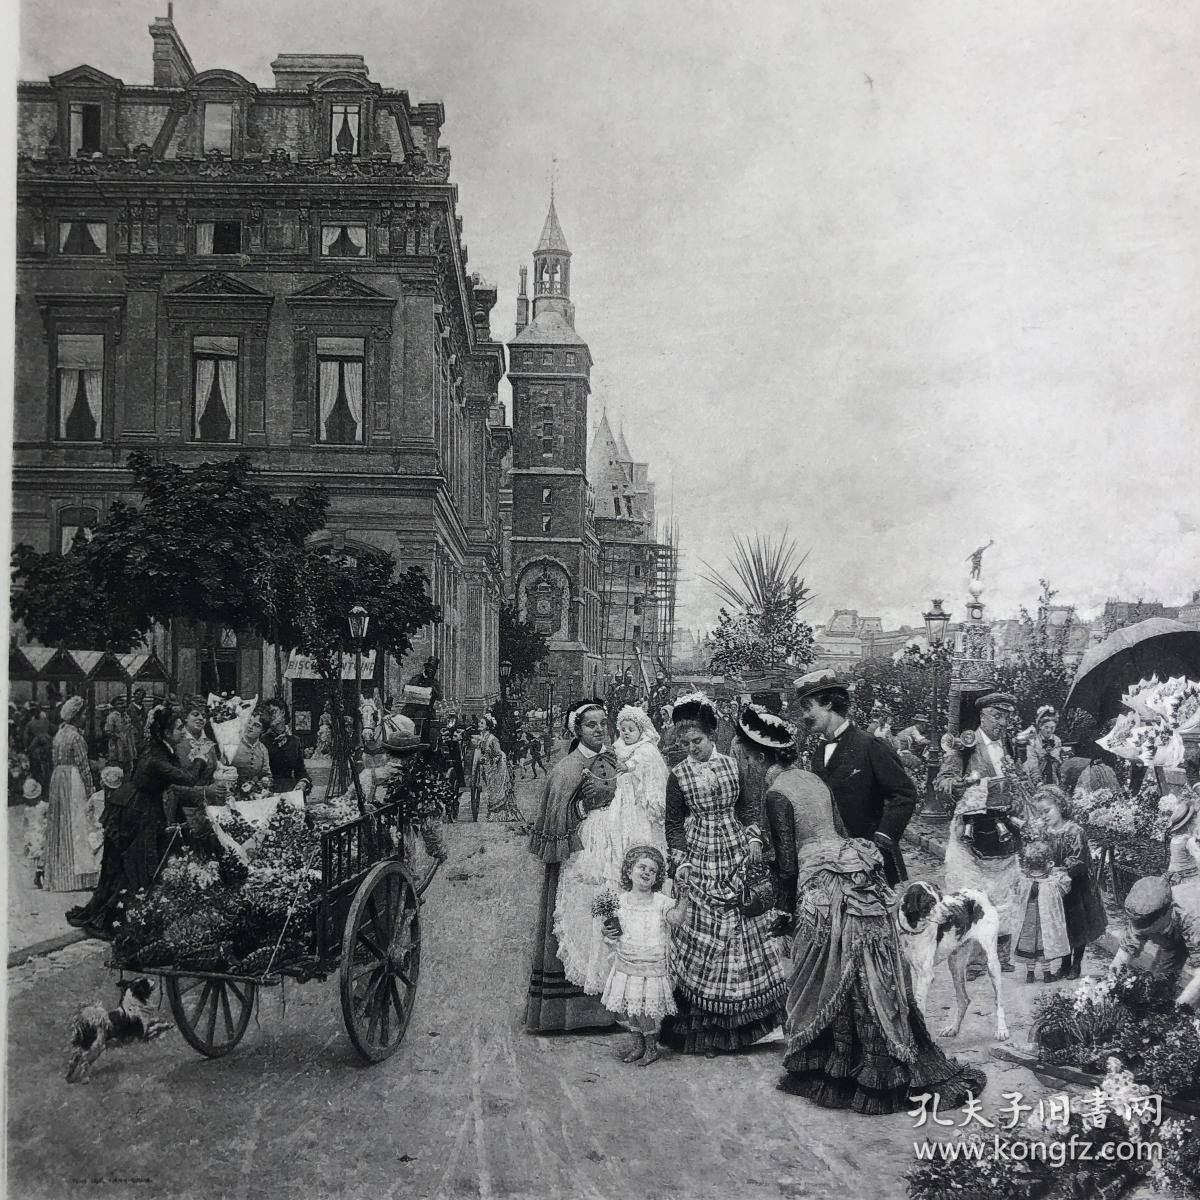 「巴黎花市」菲尔曼·吉拉德[绘] 1888年 美国艺术珍品巨幅版画 尺寸41.5*26.2厘米 / ATA213